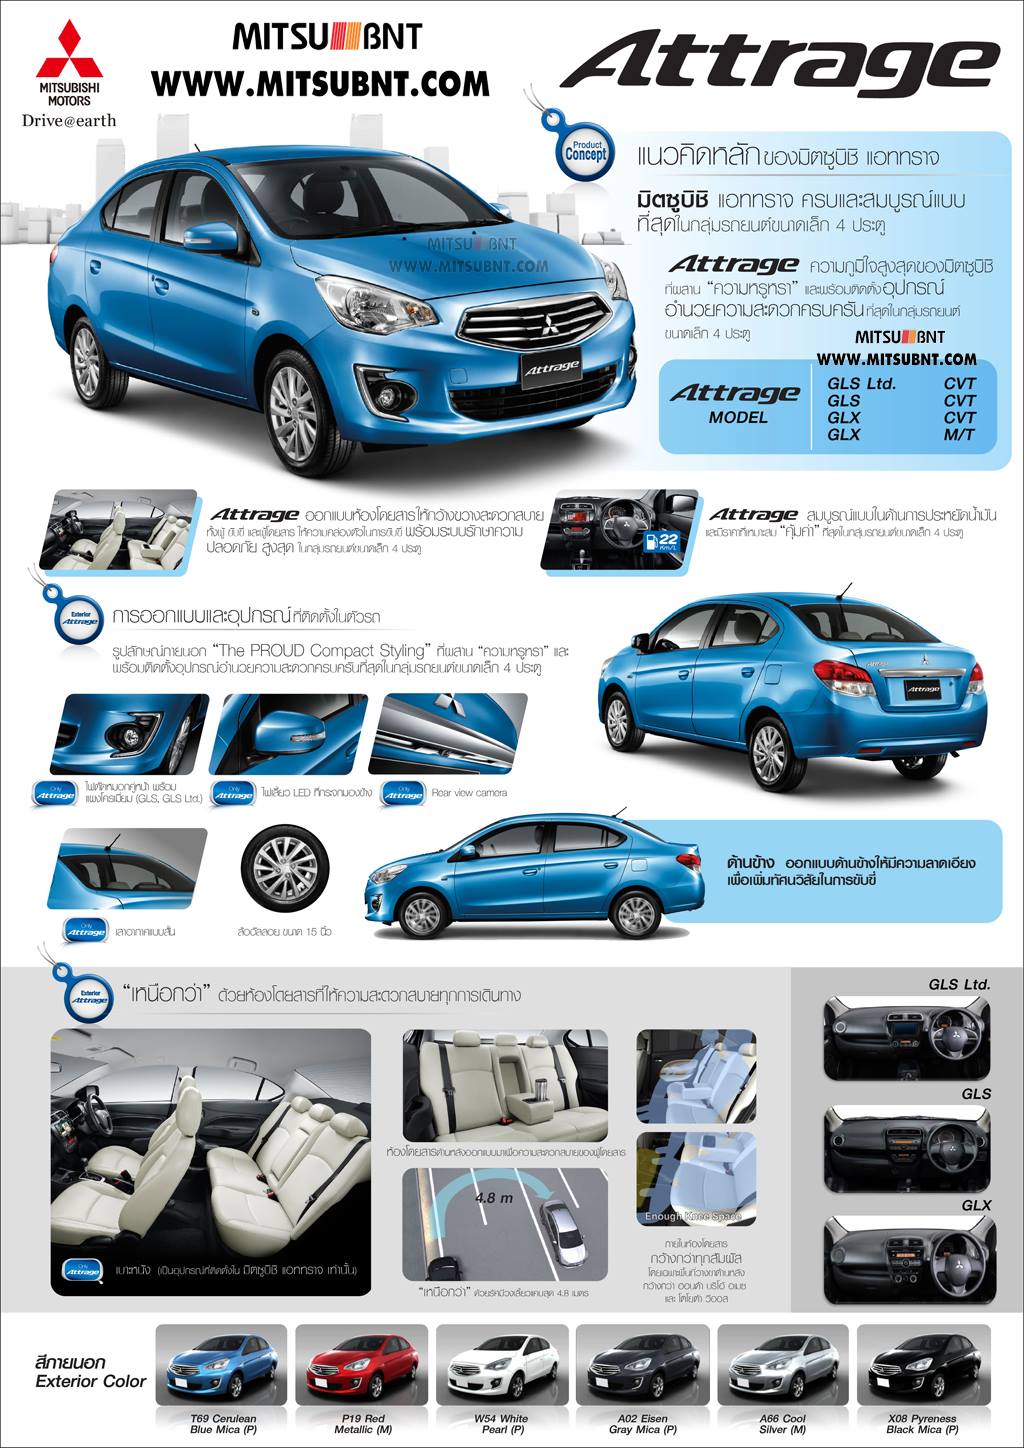 All New Mitsubishi Attrage มิตซูบิชิ แอททราจ 2014 2015 ราคาตารางผ่อนดาวน์ที่นี่เลย 